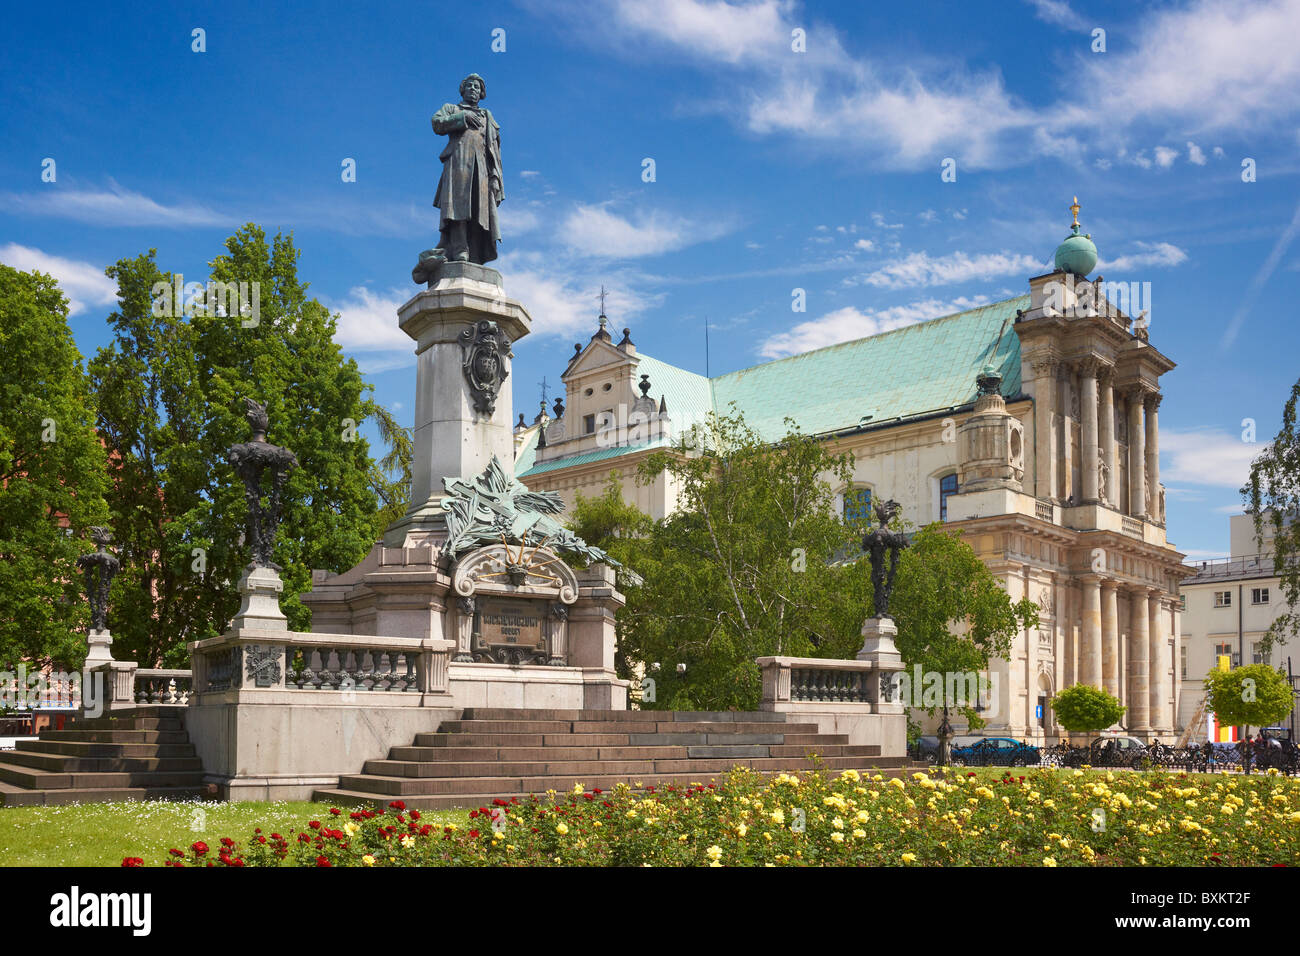 Warsaw - Statue of Adam Mickiewicz, Poland Stock Photo